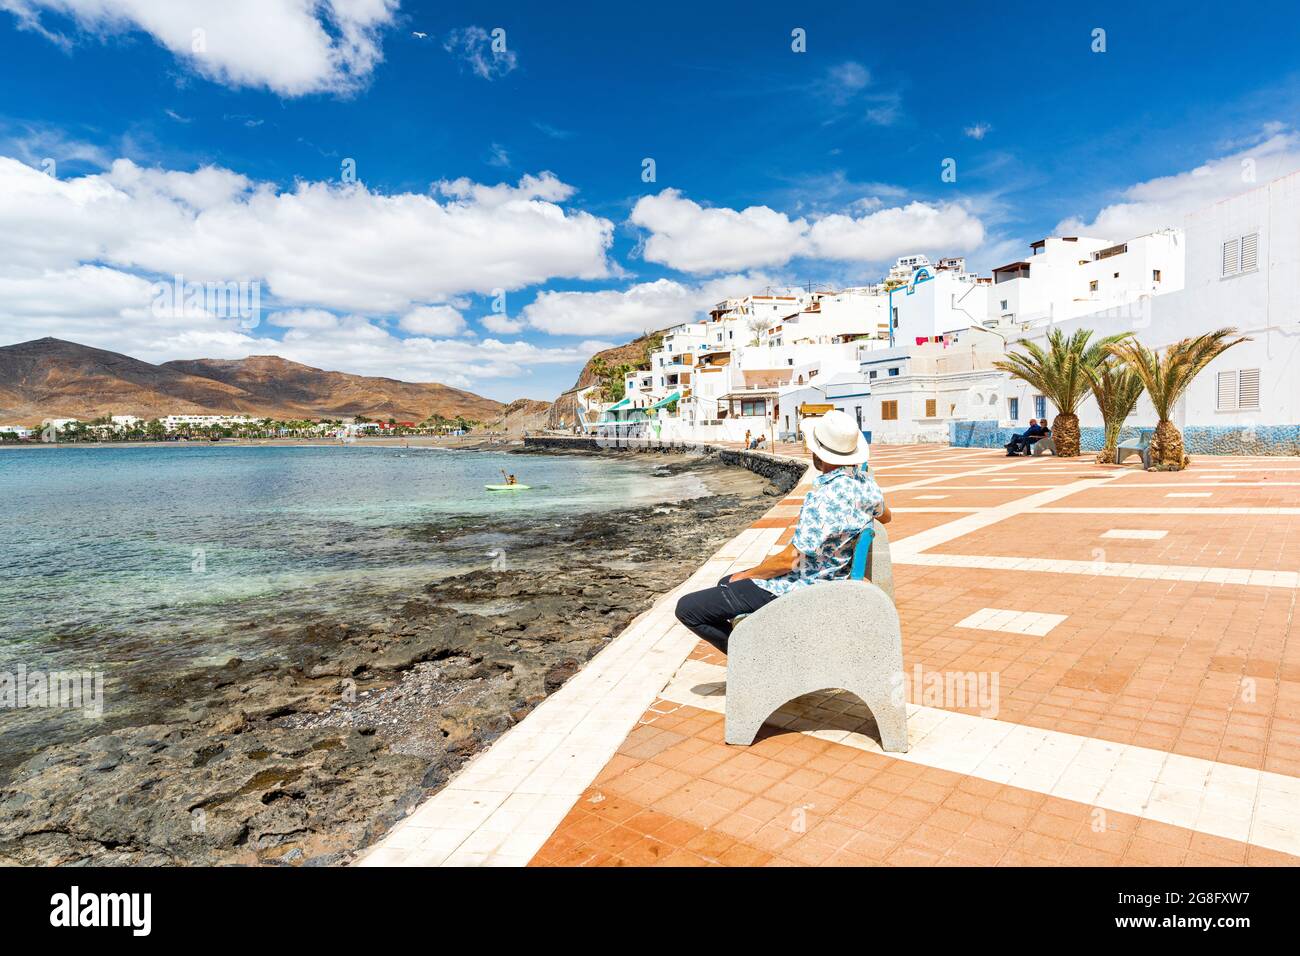 Touristen mit Strohhut bewundern das Meer auf einer Bank in Las Playitas sitzen, Fuerteventura, Kanarische Inseln, Spanien, Atlantik, Europa Stockfoto